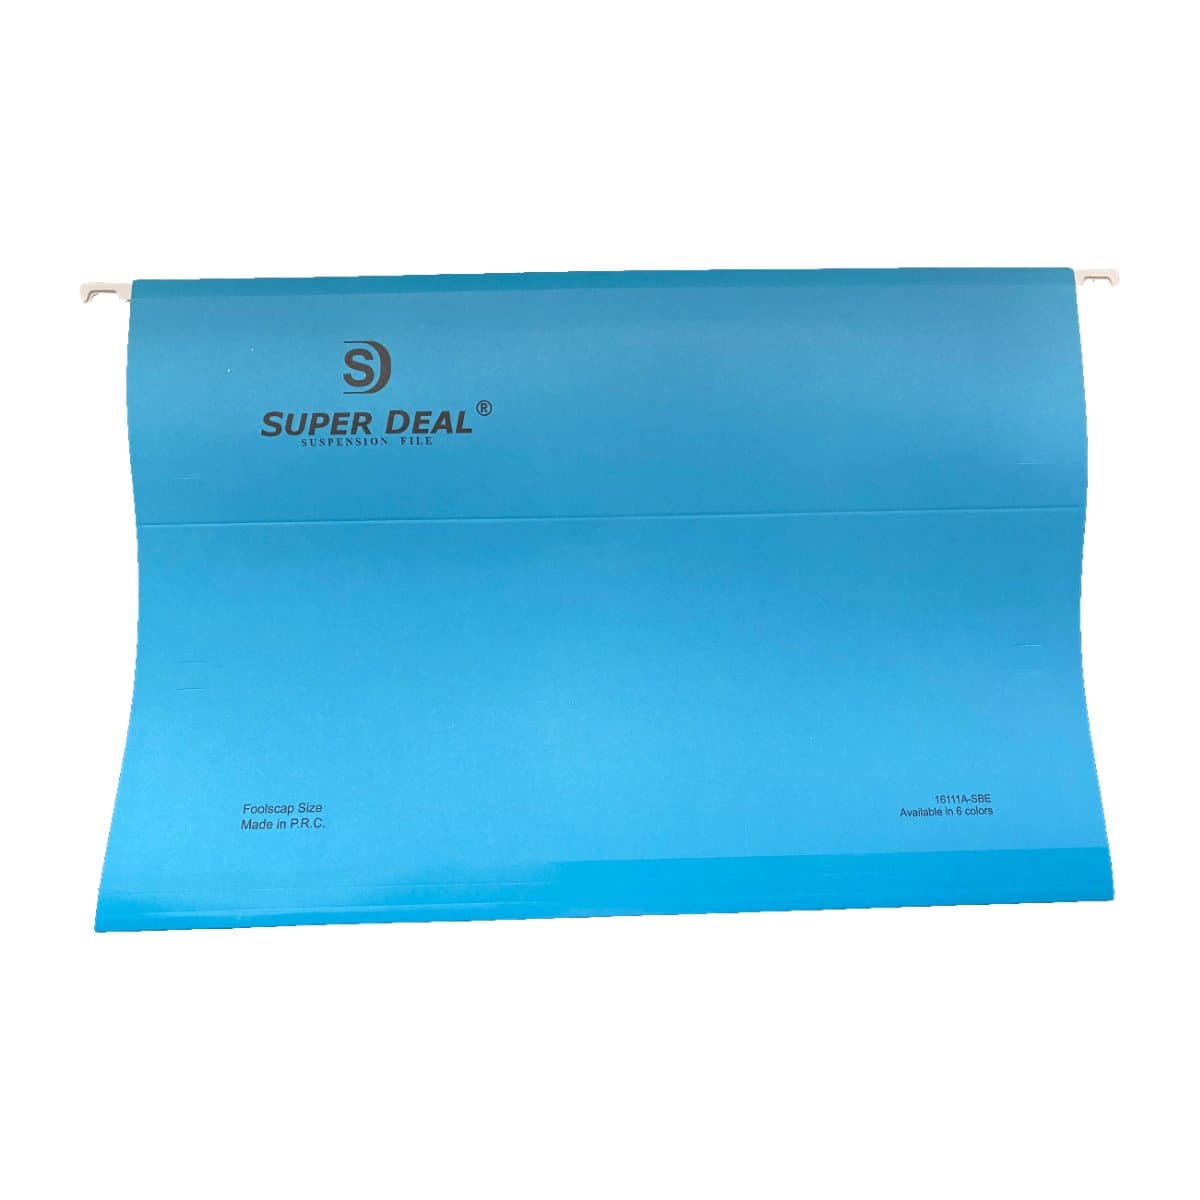 Super Deal Suspension File F/S, 50/box, Blue